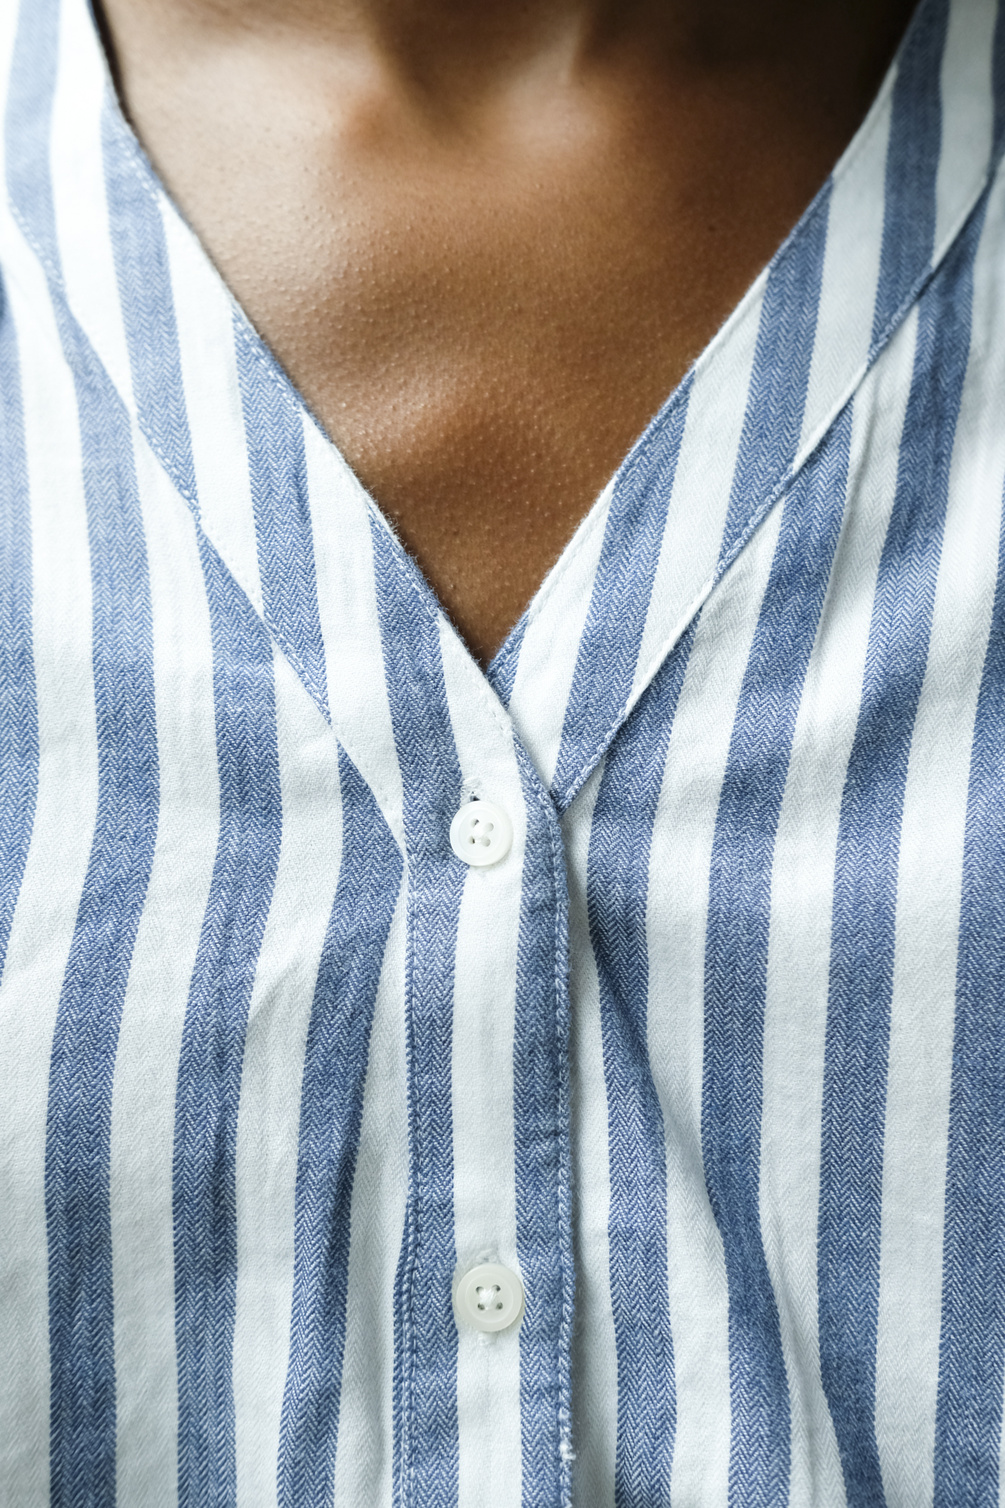 âme gante shirt white blue stripe